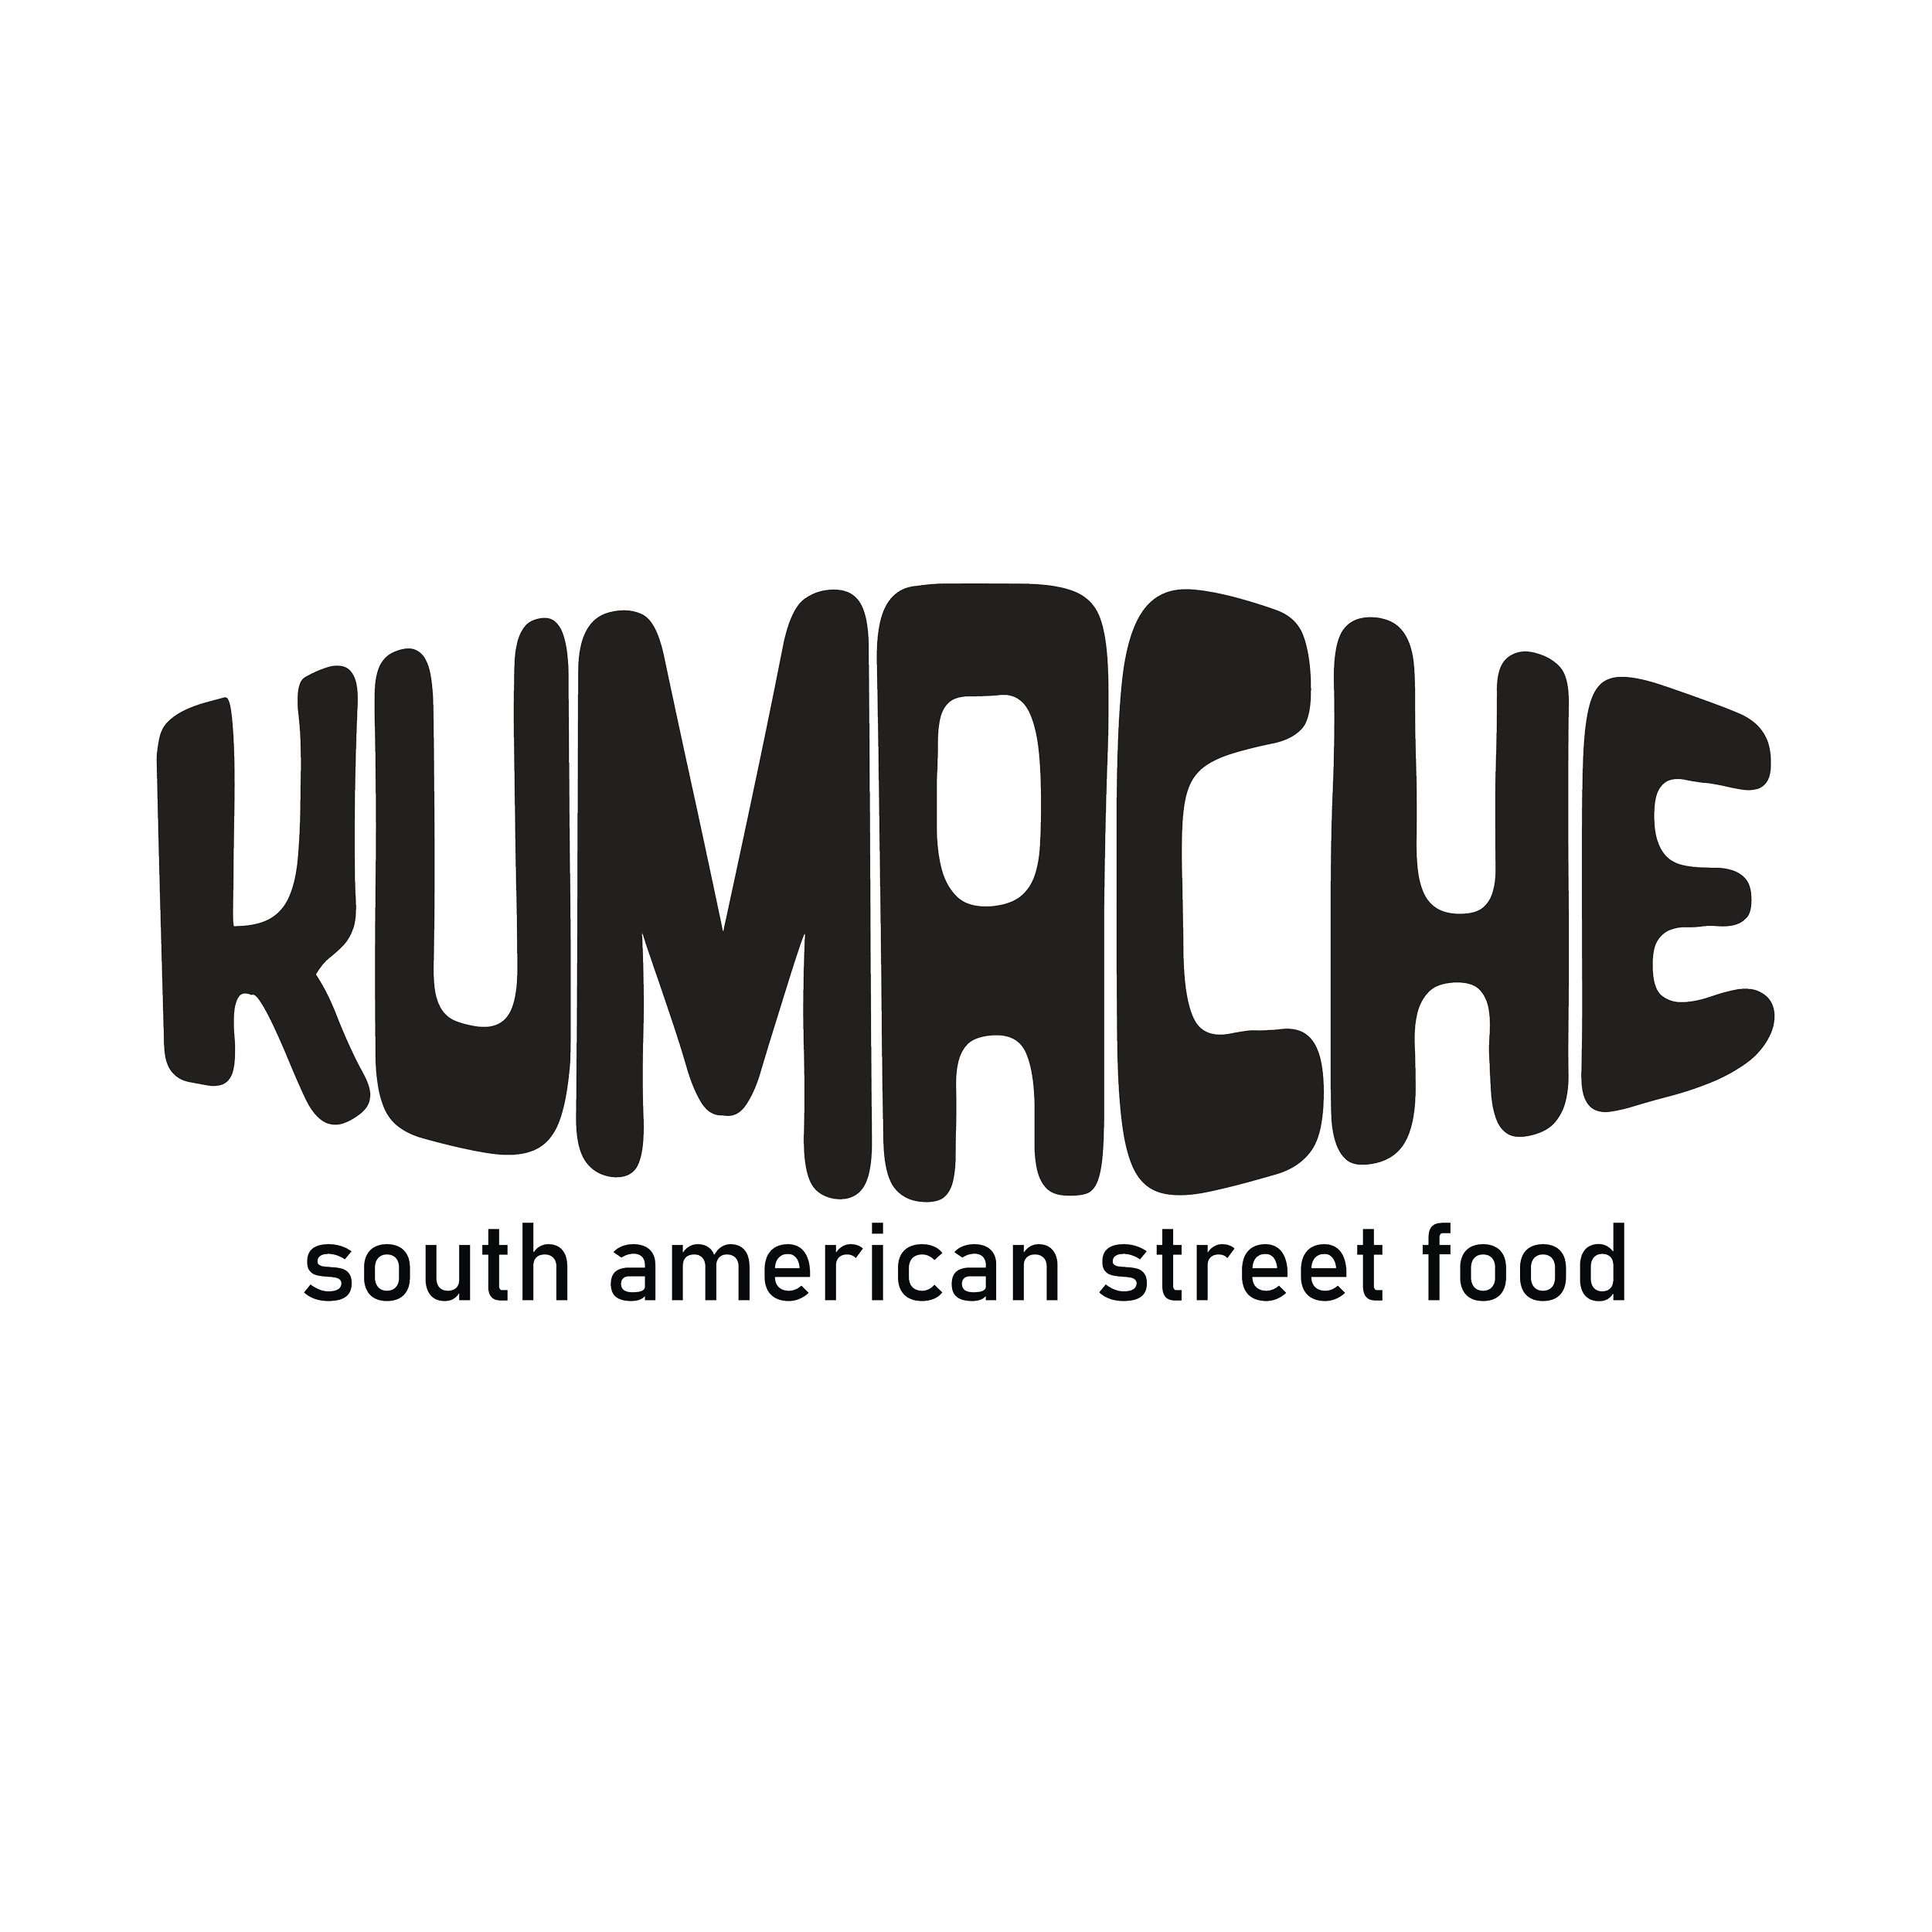 Kumache Kitchen